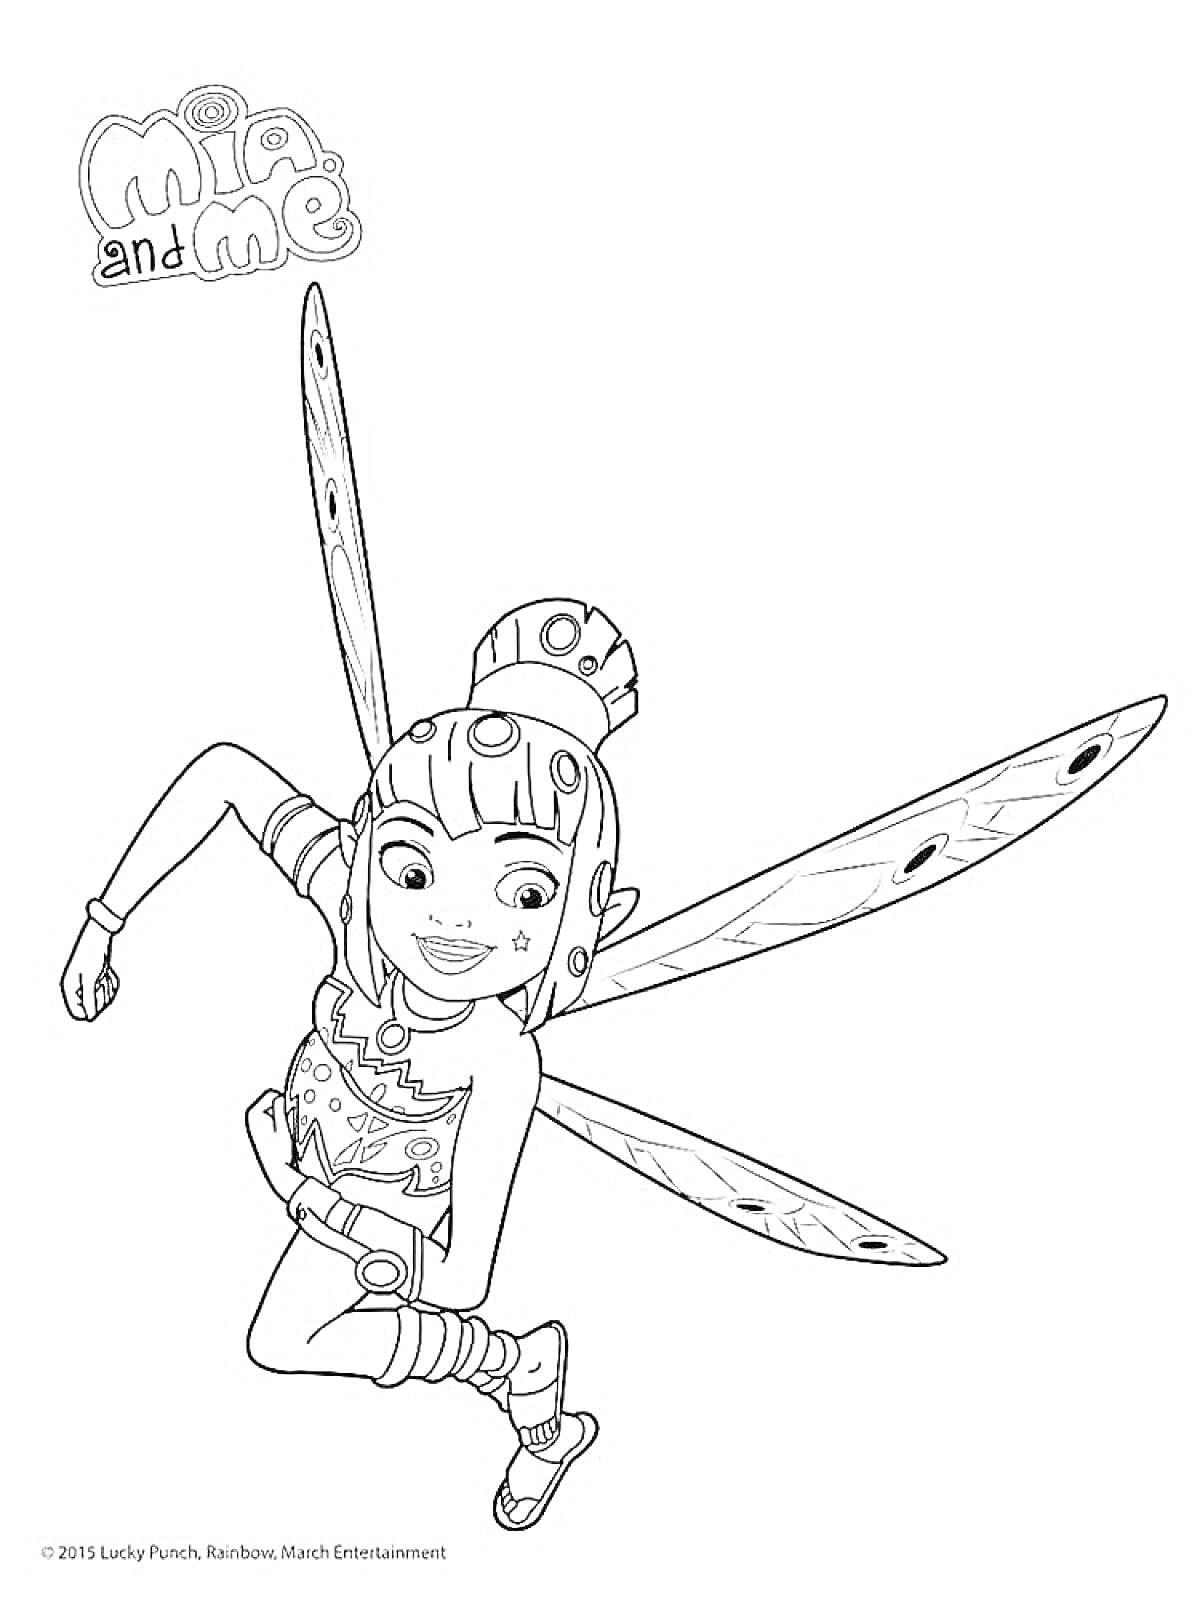 девочка-фея в полете с крыльями и узорчатой одеждой под брендом 